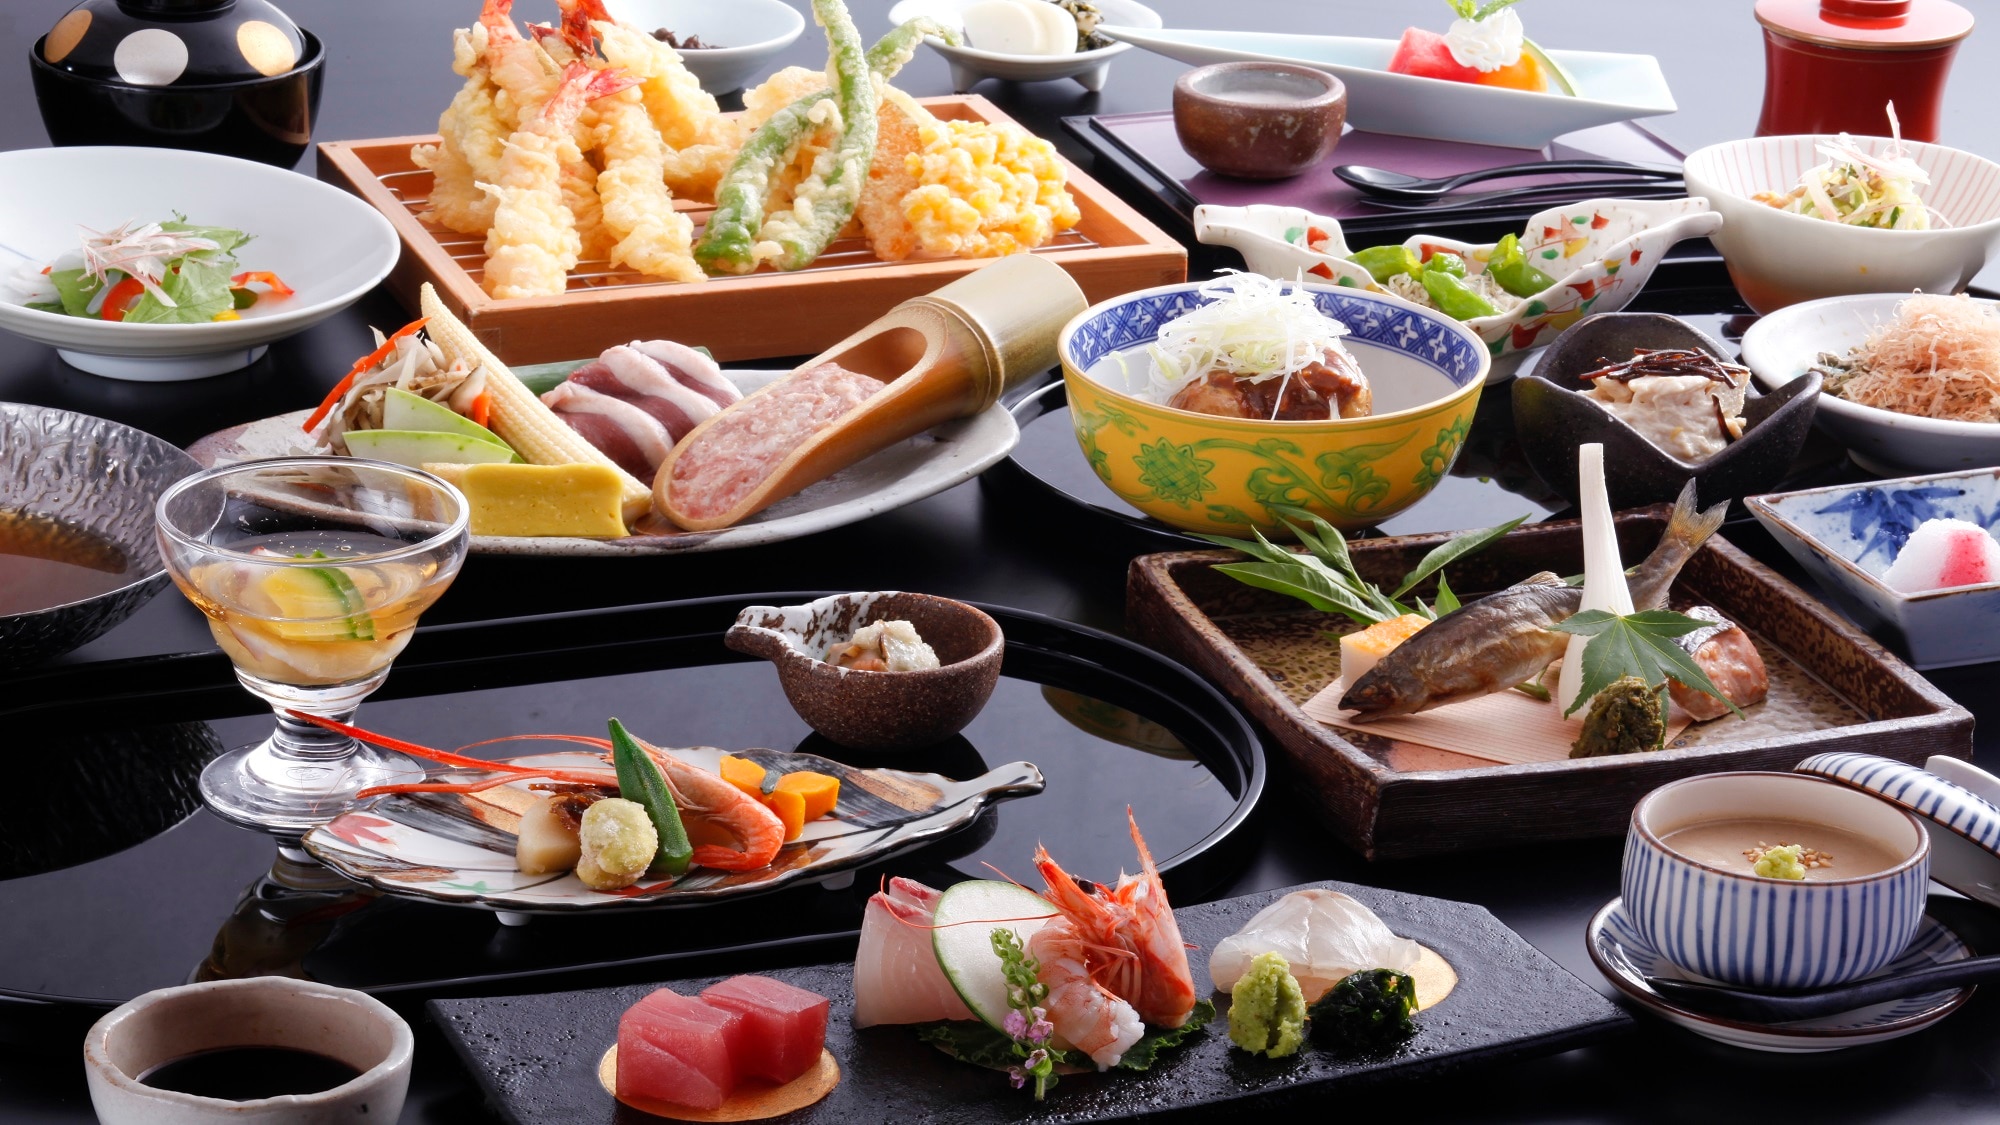 [晚餐] 季节性晚餐课程。京都御坂菜和天妇罗